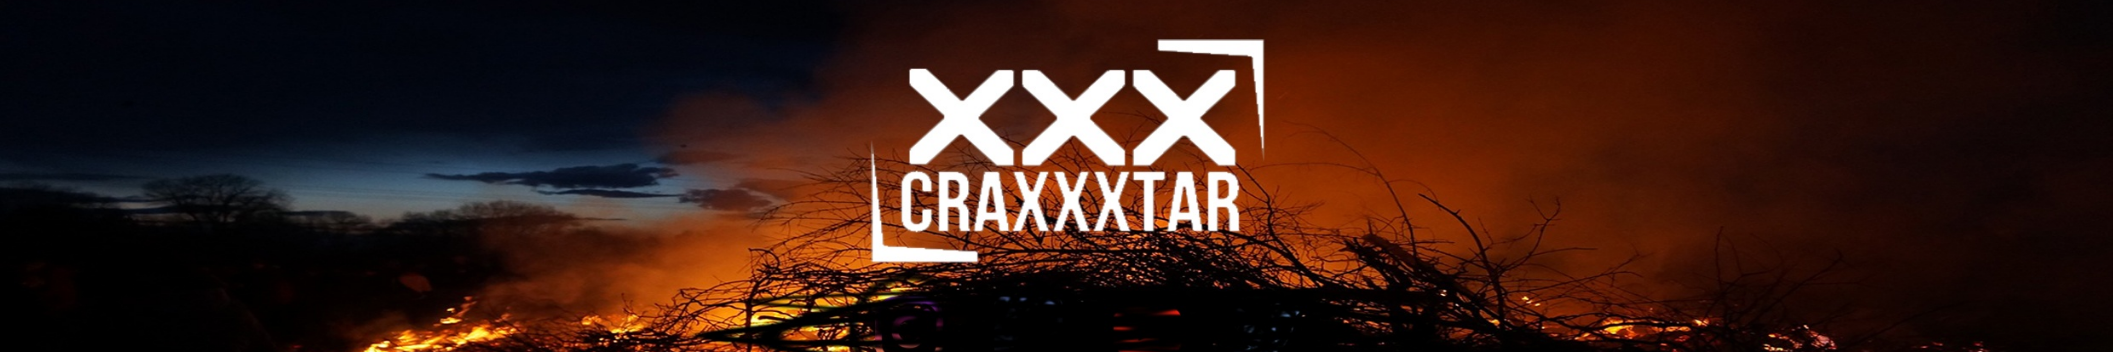 Craxxxtar aka BREVTHE